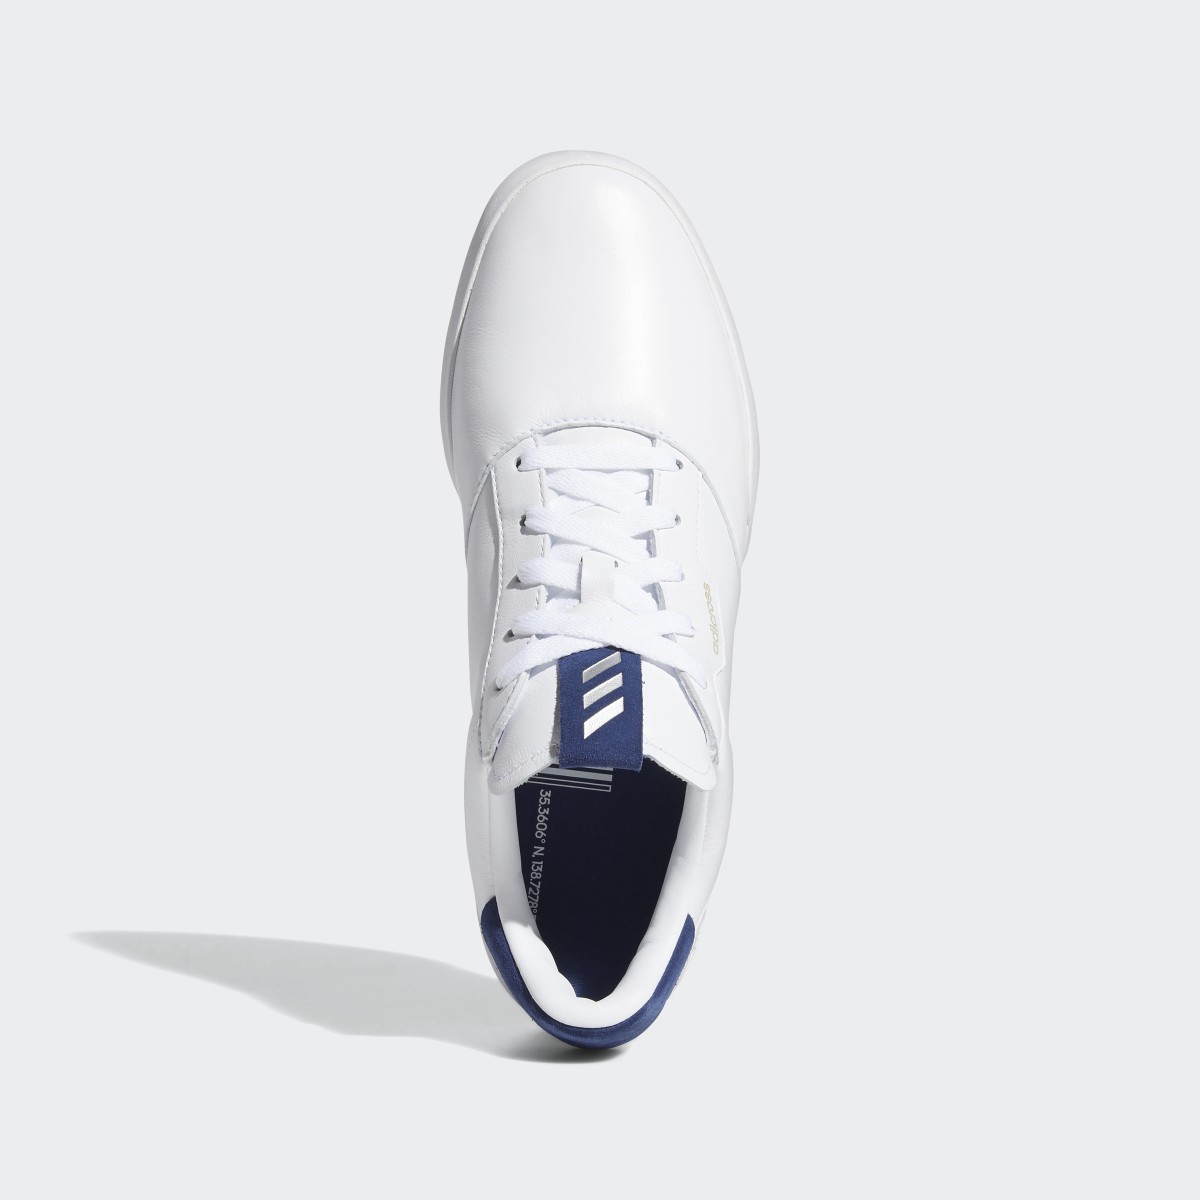 Adidas Adicross Retro Golf Shoes. 6